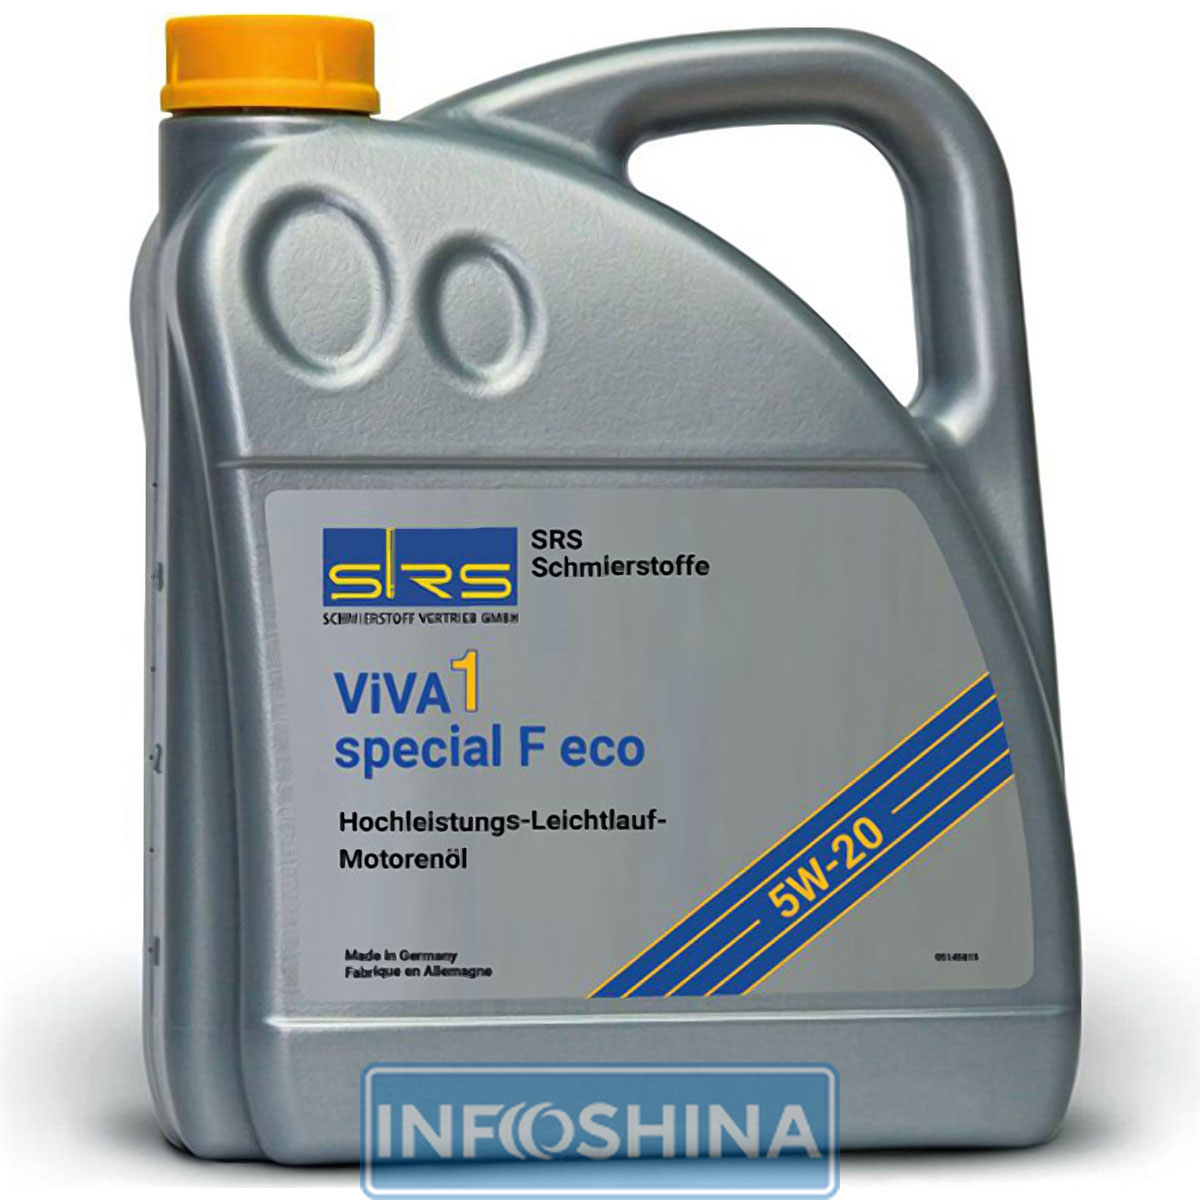 Купить масло SRS ViVA 1 special F eco 5W-20 (5л)